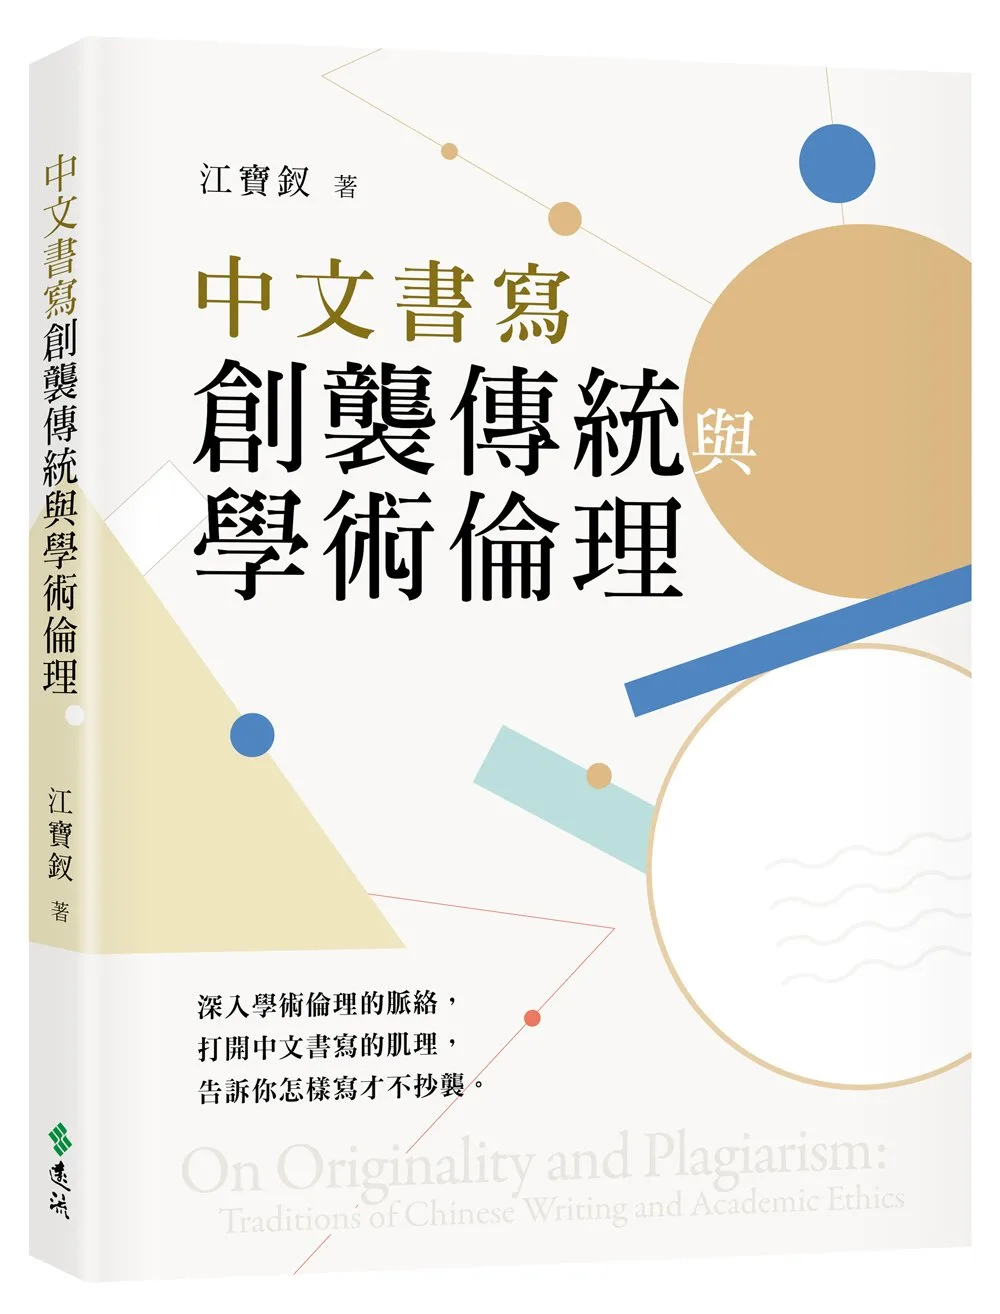 中文書寫創襲傳統與學術倫理